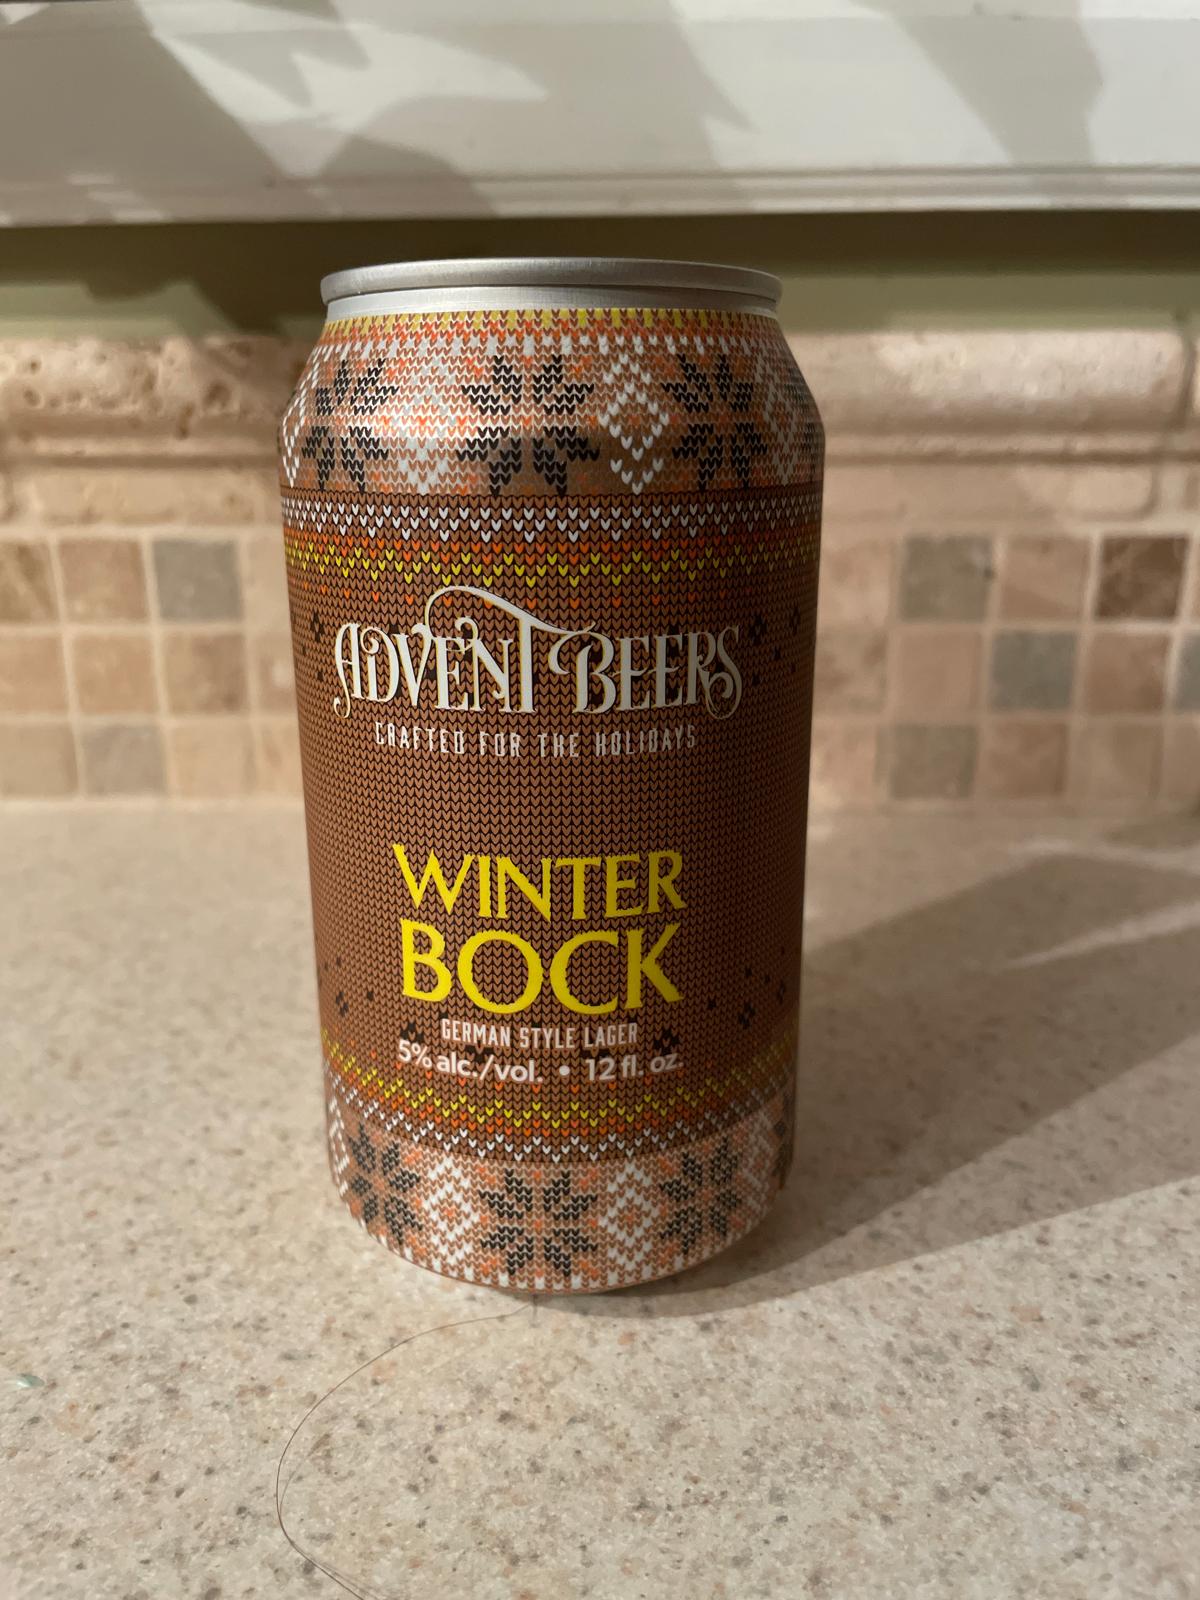 Advent Beers Winter Bock